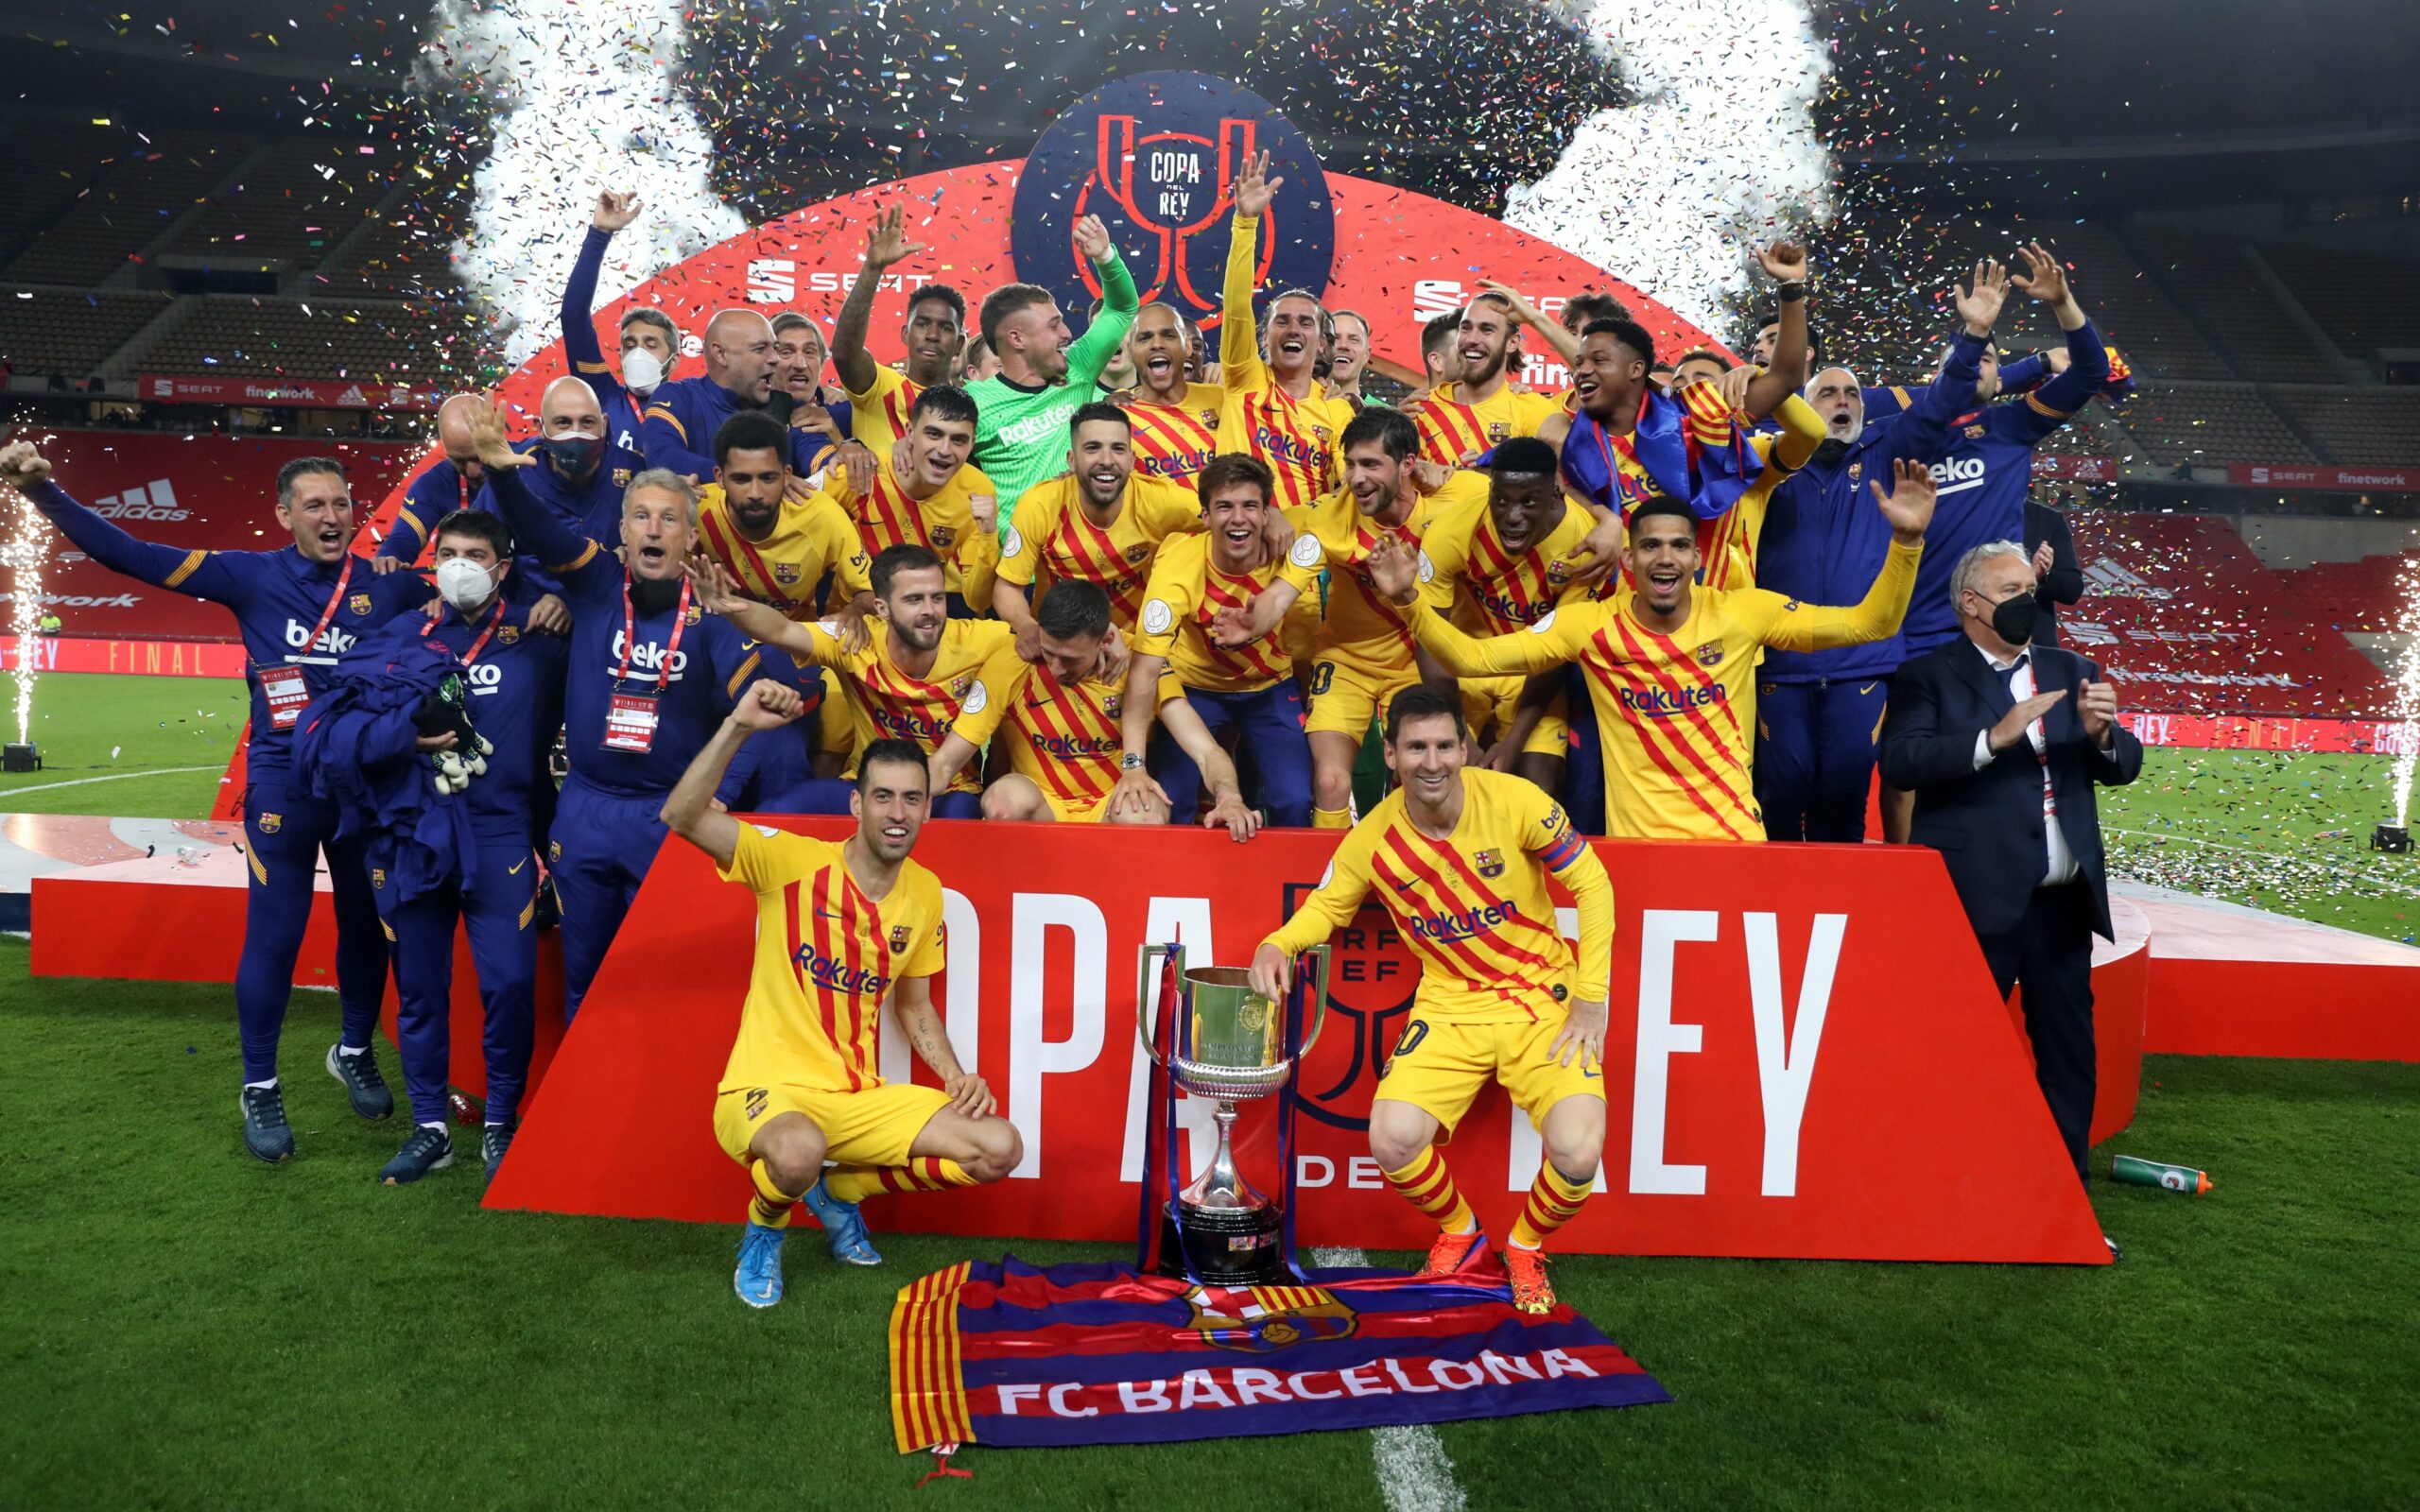 Barcelona campeón de la Copa del Rey - La Noticia